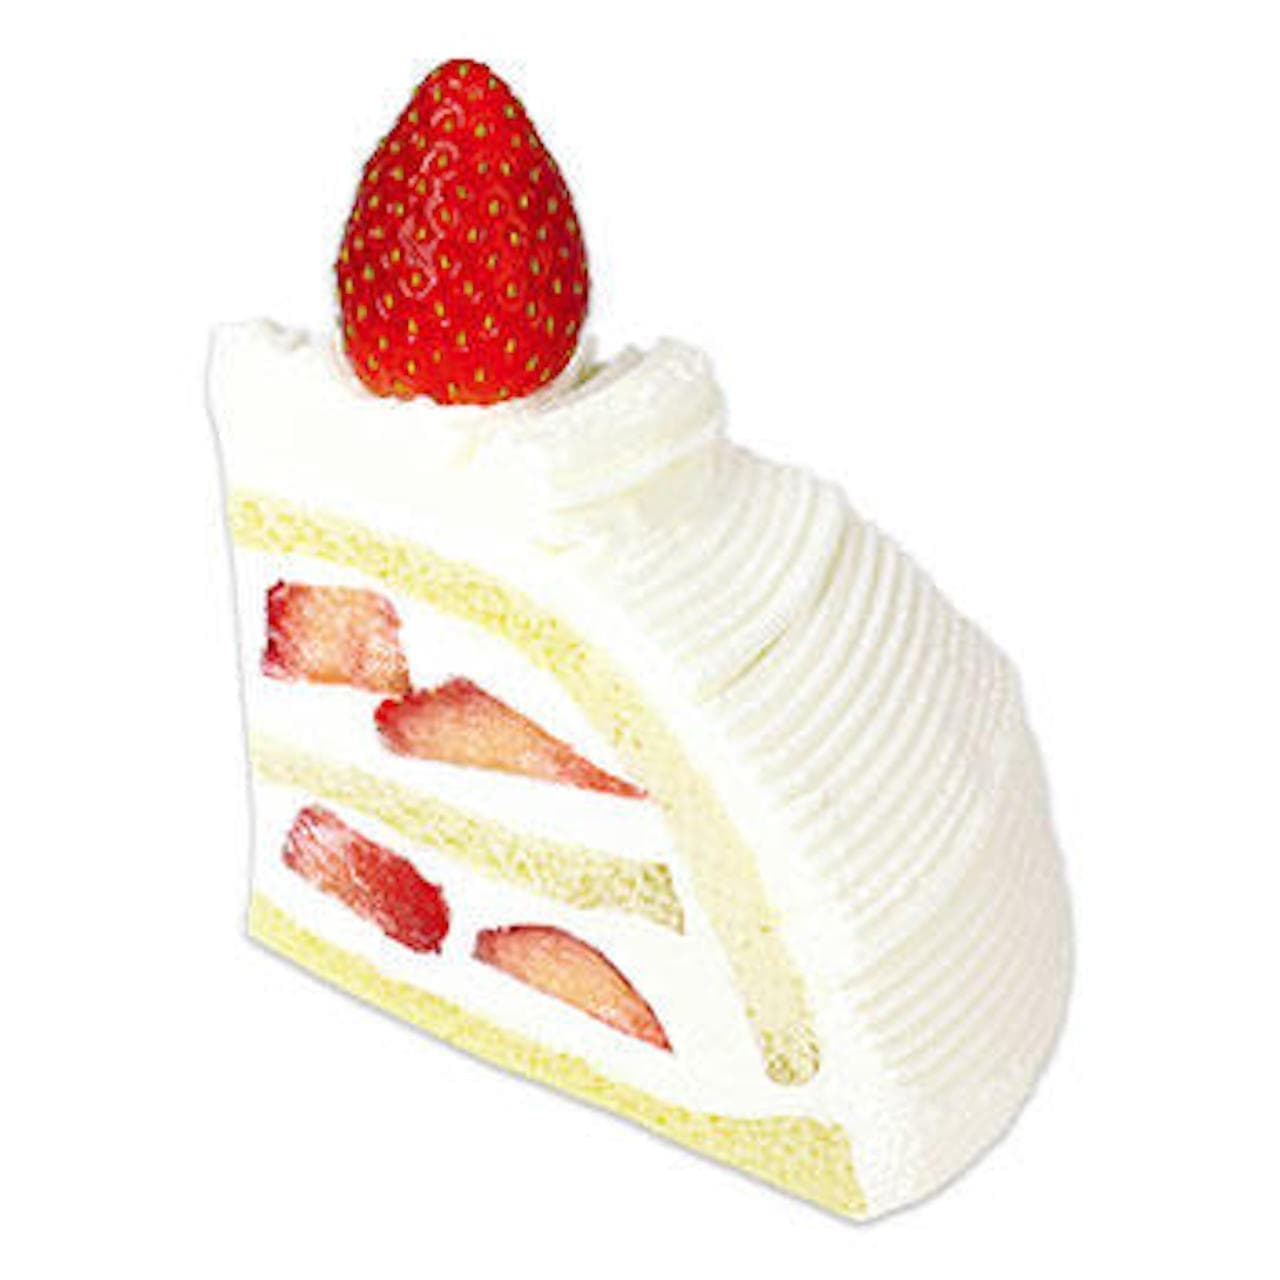 Fujiya "Strawberry Reward Italian Shortcake